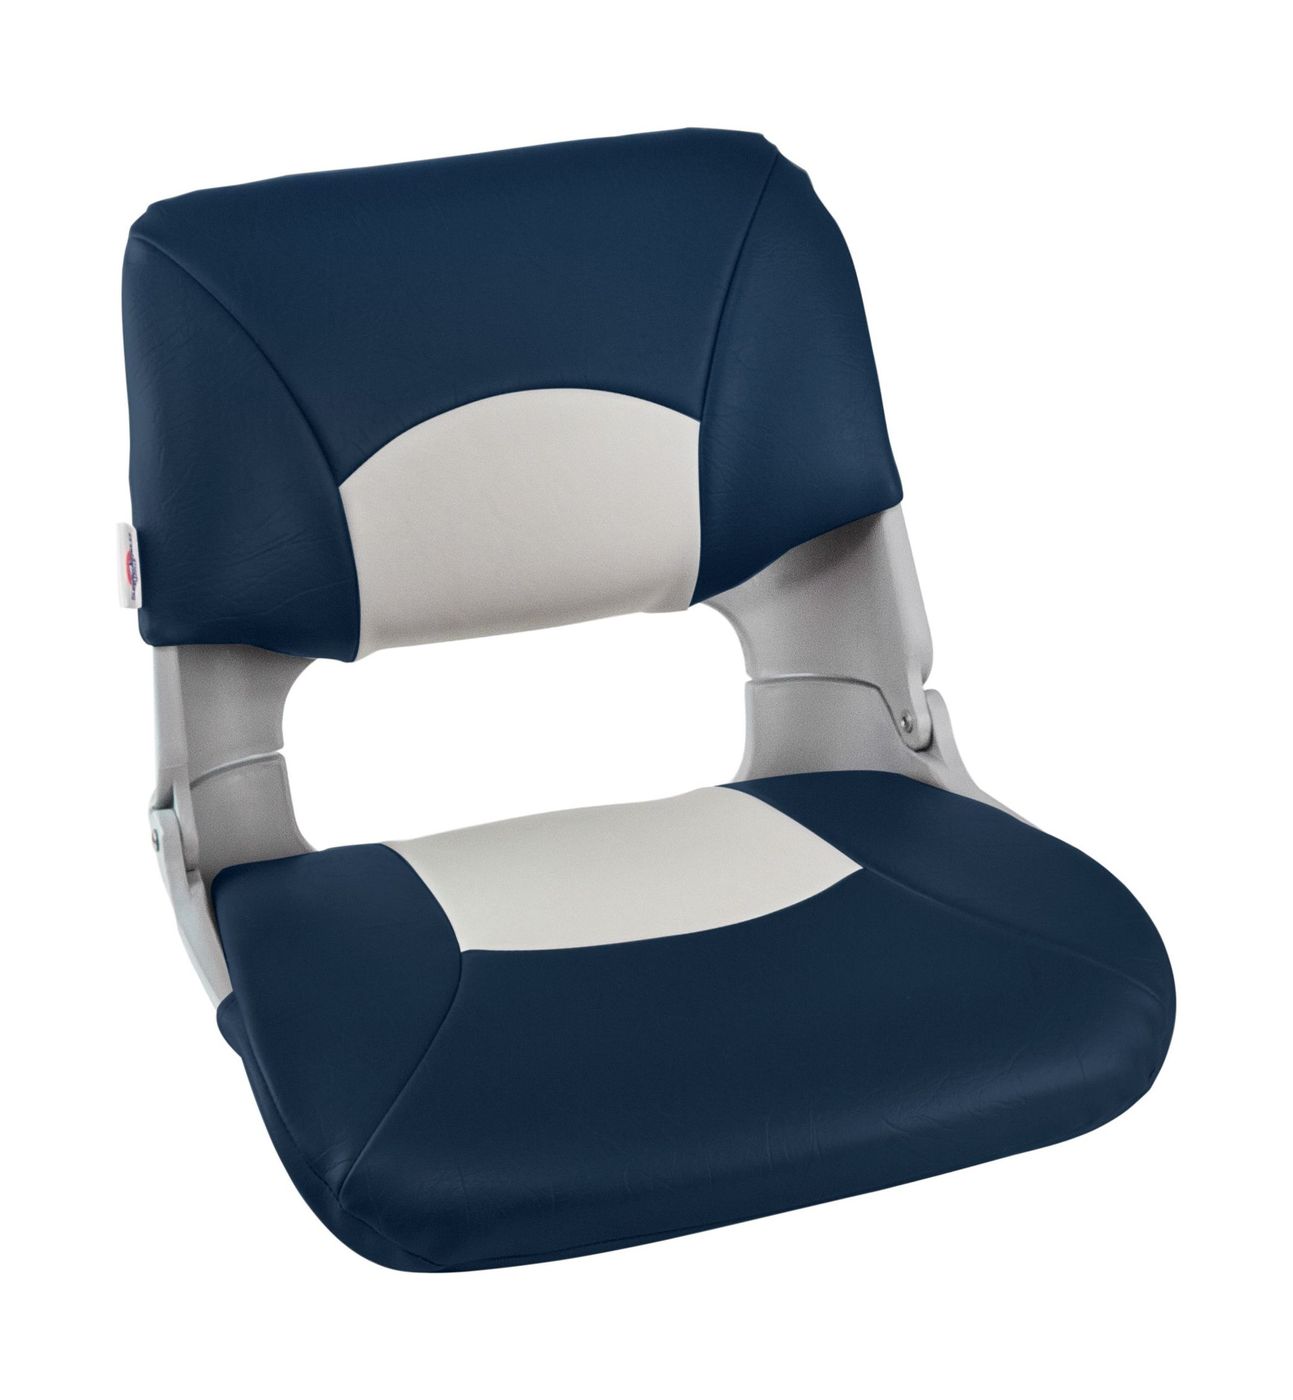 Кресло складное мягкое SKIPPER, цвет серый/синий 1061019 кресло складное мягкое sport с высокой спинкой синий серый 1040513